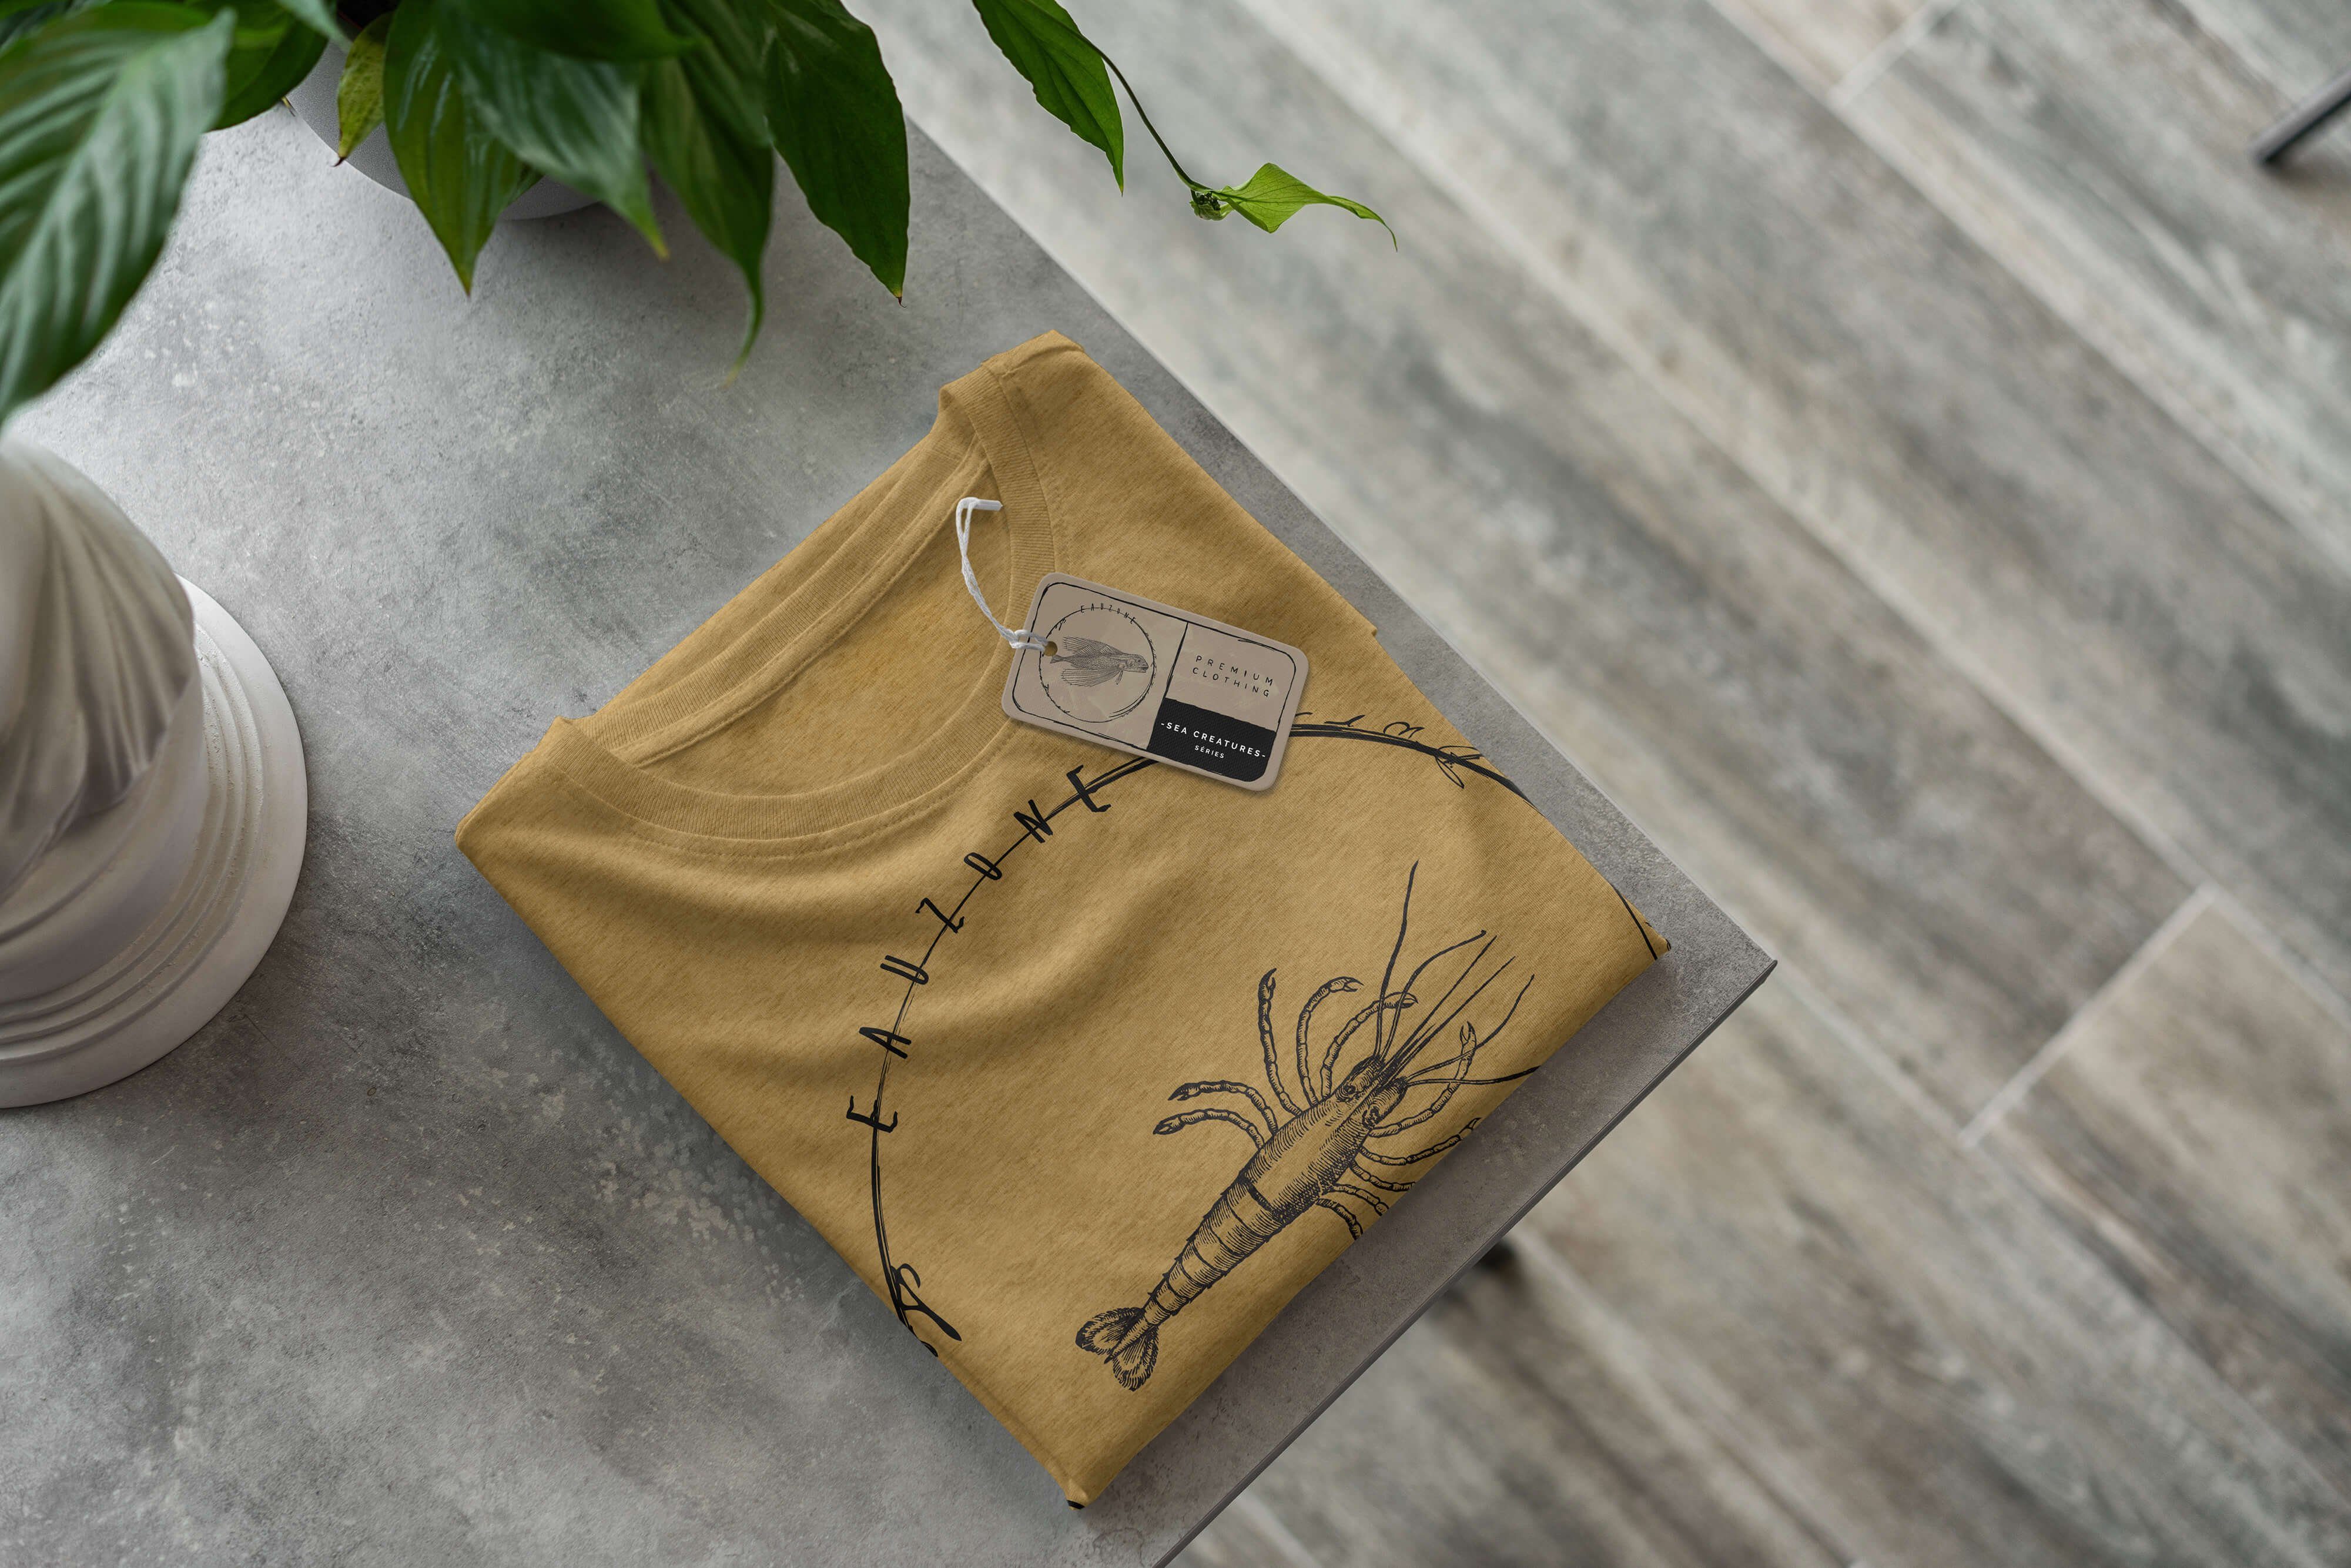 Sinus Art T-Shirt T-Shirt 009 Serie: Schnitt sportlicher und Creatures, Gold Sea Antique Struktur Sea Tiefsee Fische feine - 